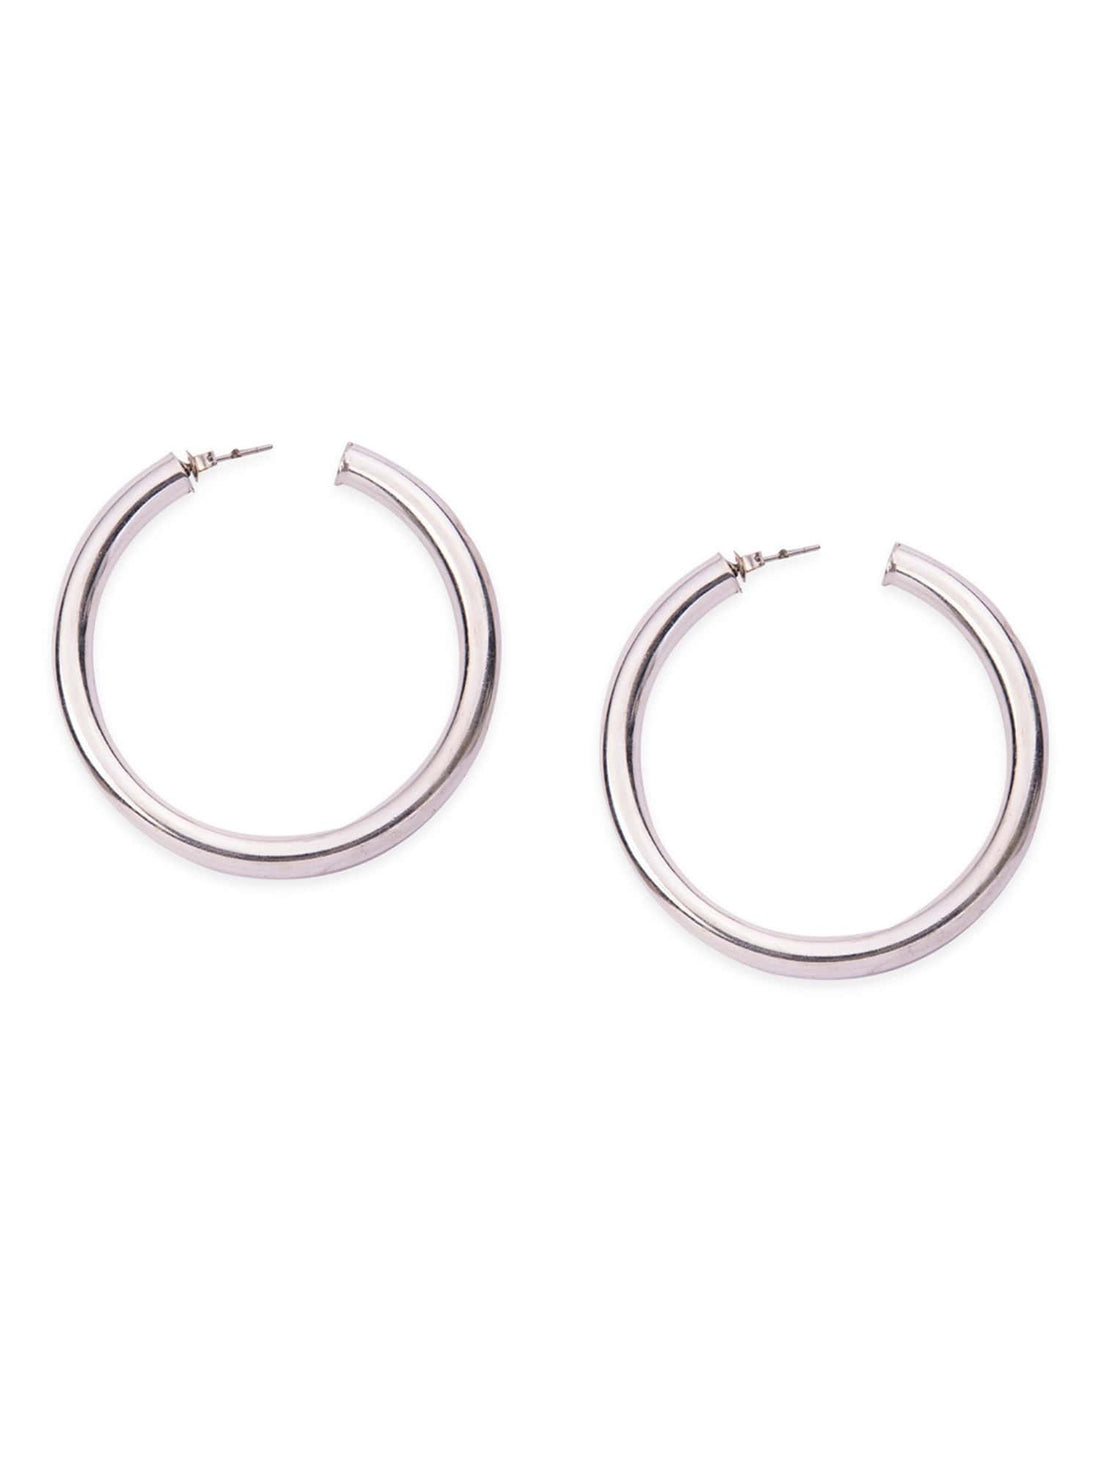 Daily Wear Hoops Earrings - Statement Silver-Plated Brass Earrings By Studio One Love